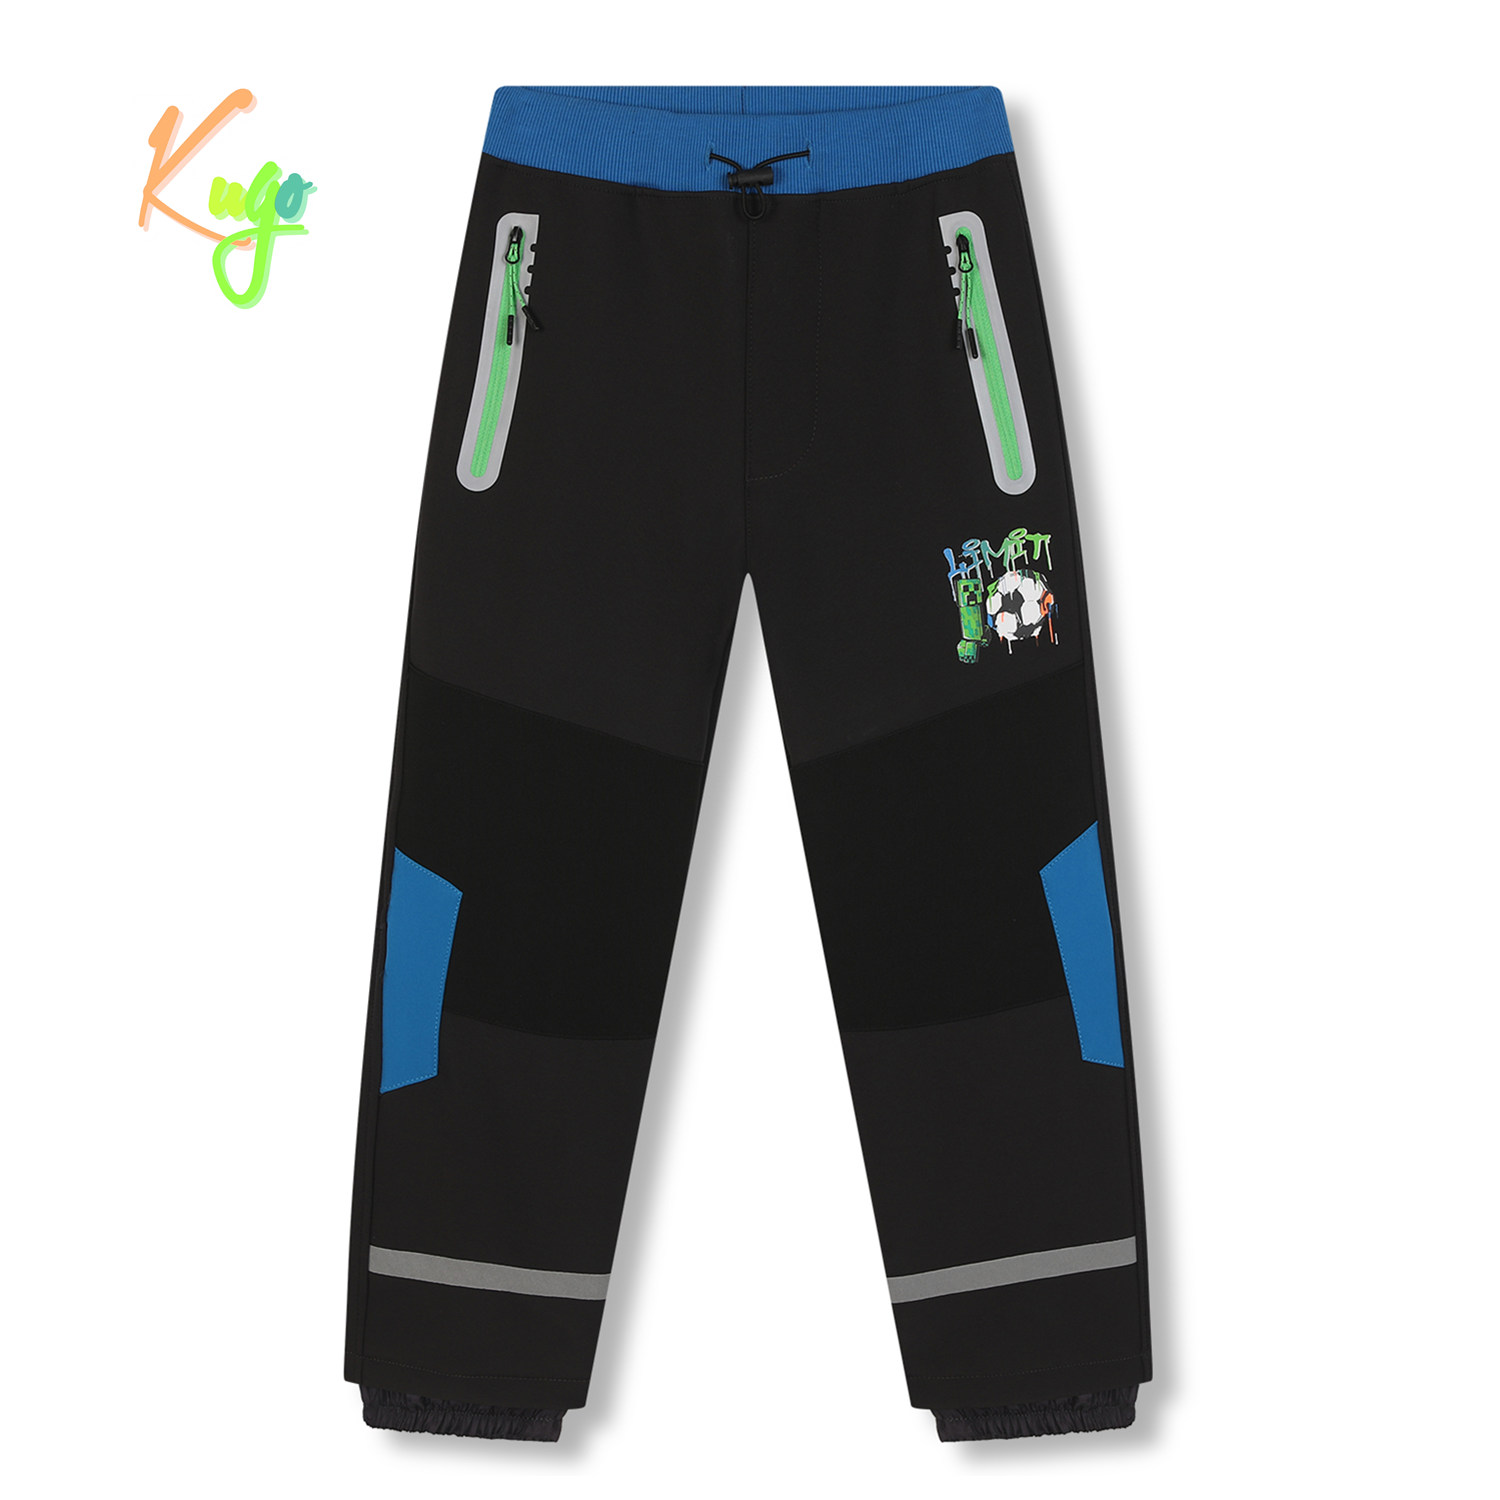 Chlapecké softshellové kalhoty, zateplené - KUGO HK5609, tmavě šedá / zelené zipy Barva: Šedá, Velikost: 122